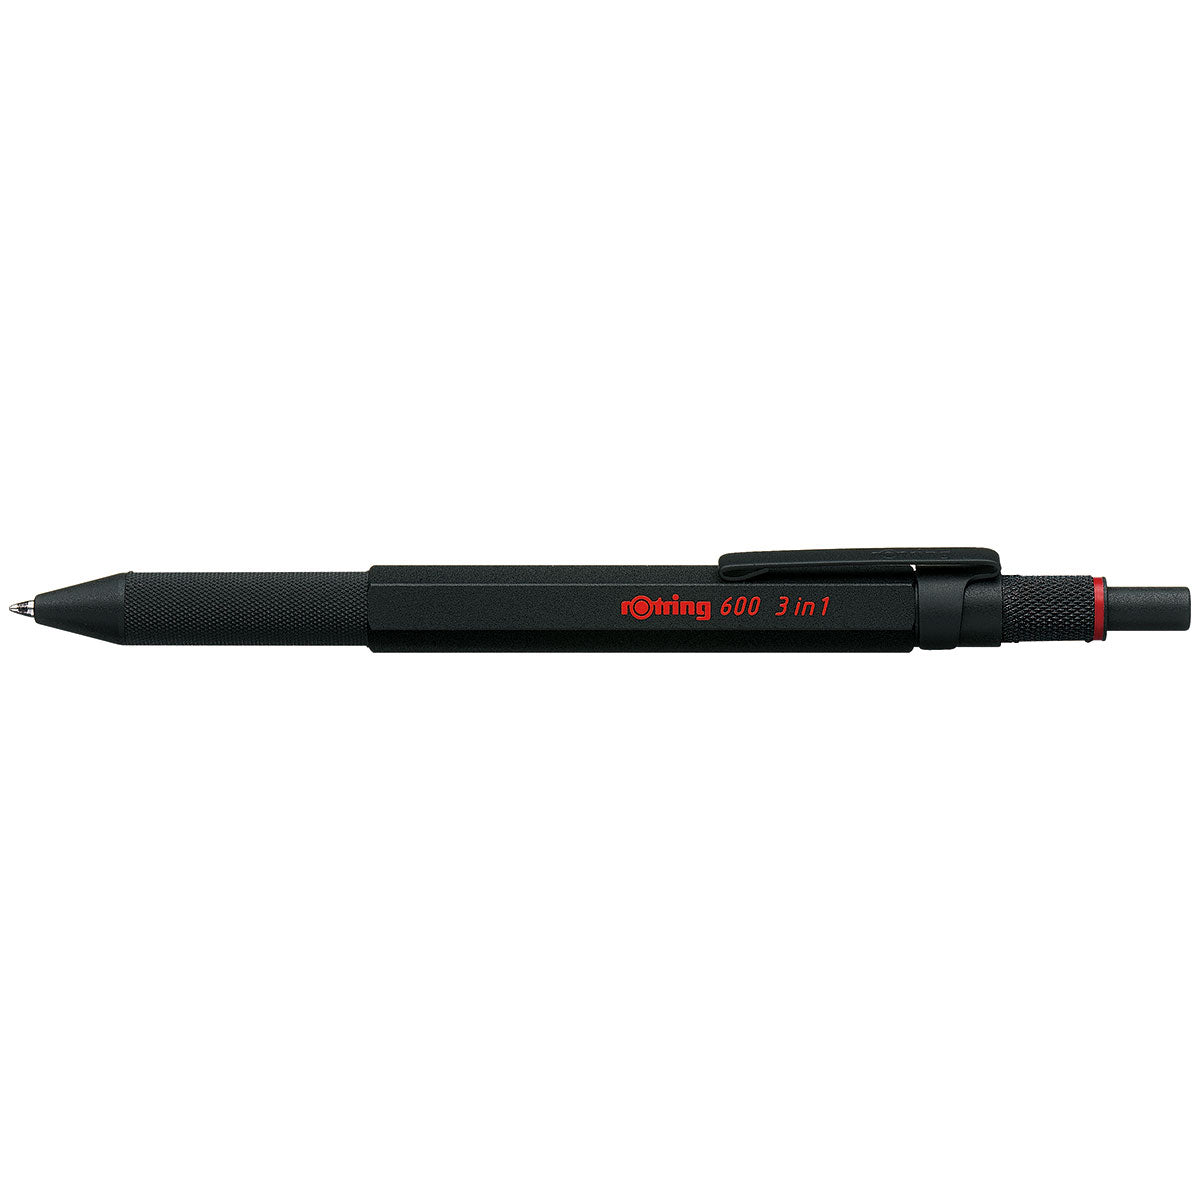 Rotring 600 Black 3 in 1 Multi Pen - Black, Red Ink, 0.5 Pencil 